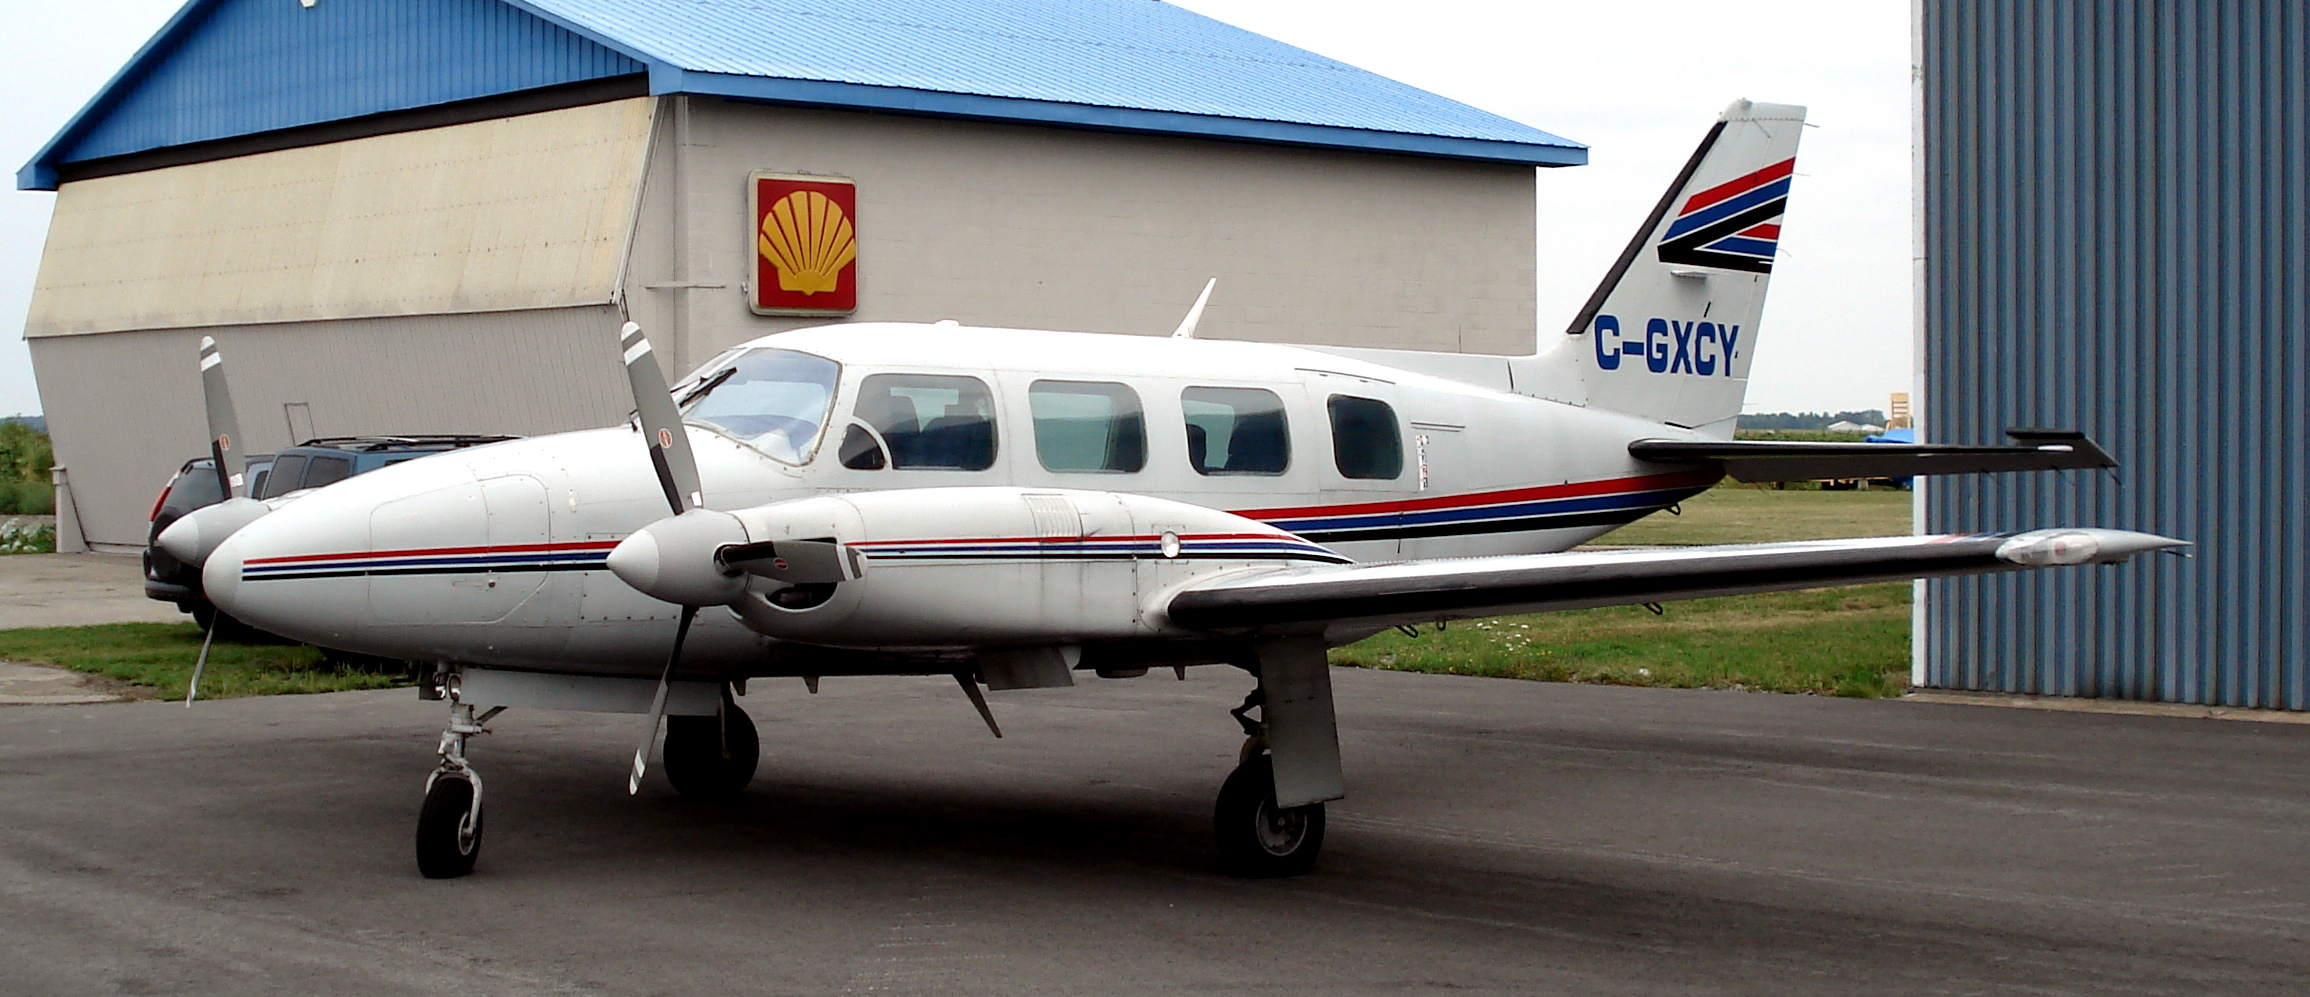 Piper PA-31 Navajo/Pressurized Navajo next